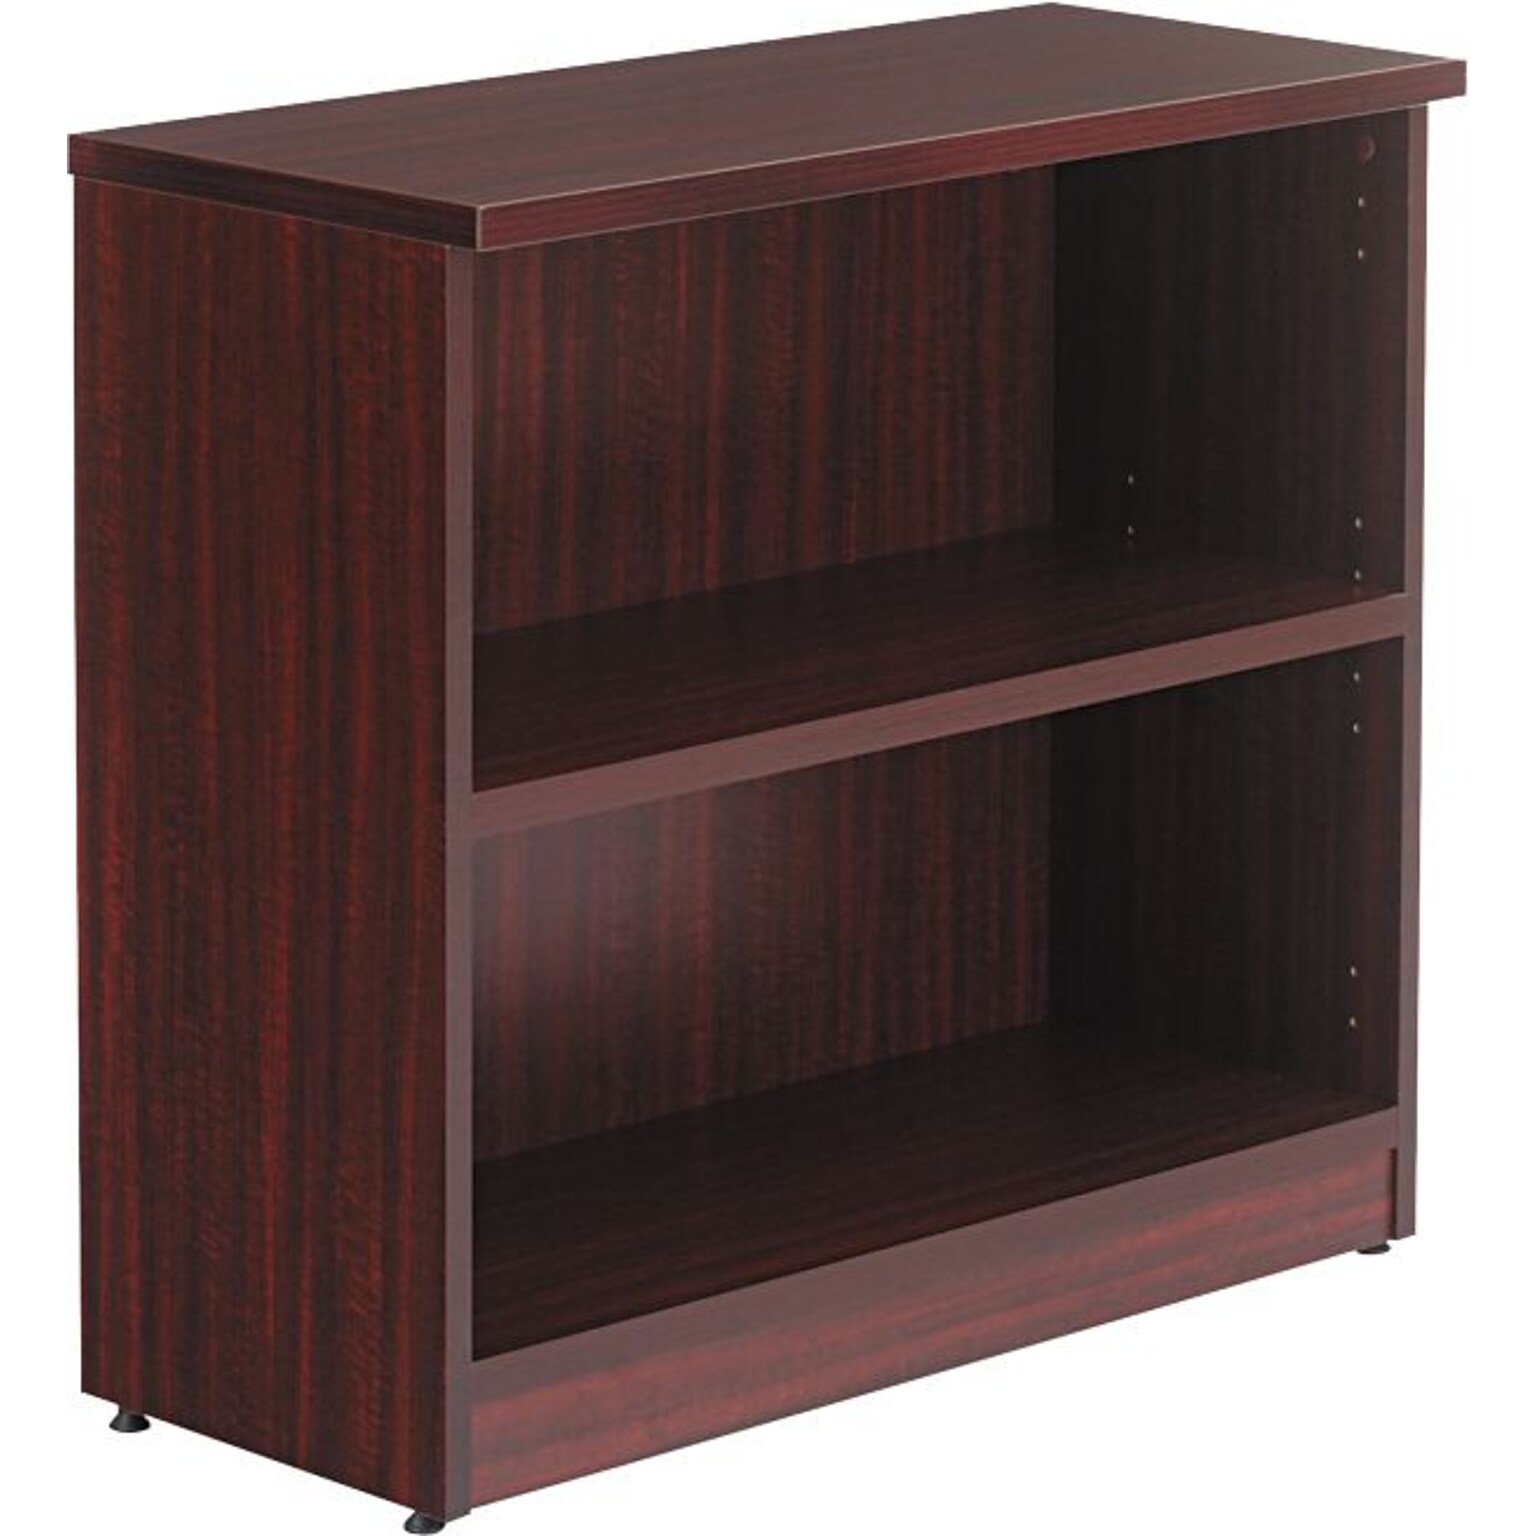 Alera Valencia 29.5H 2-Shelf Bookcase with Adjustable Shelf, Mahogany Laminated Wood (ALEVA633032MY)